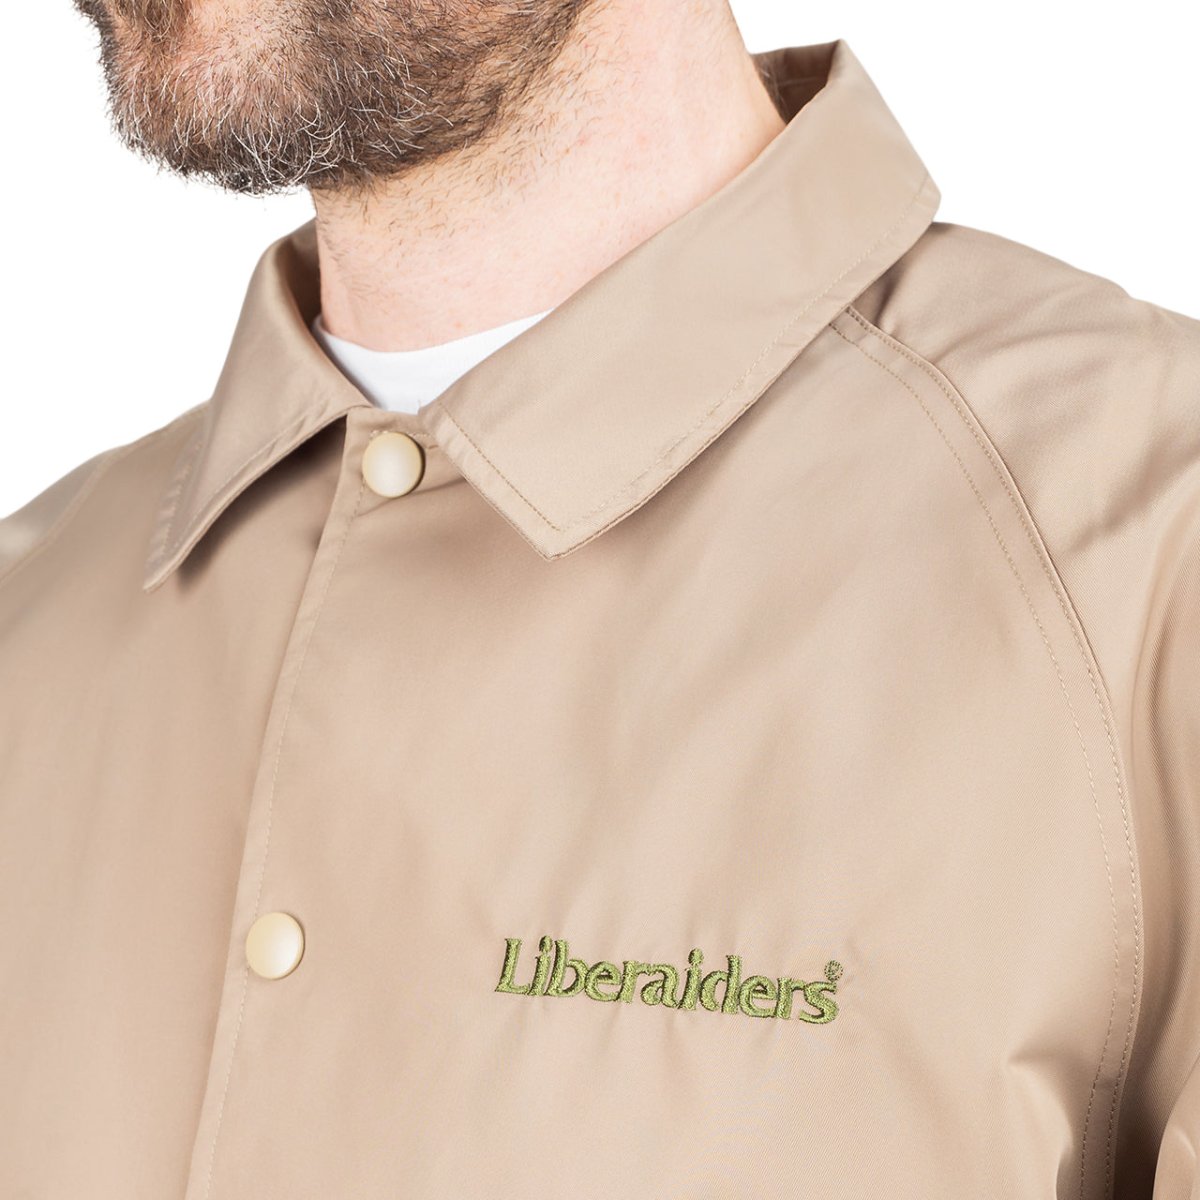 Liberaiders OG Embroidery Coach Jacket (Beige)  - Allike Store